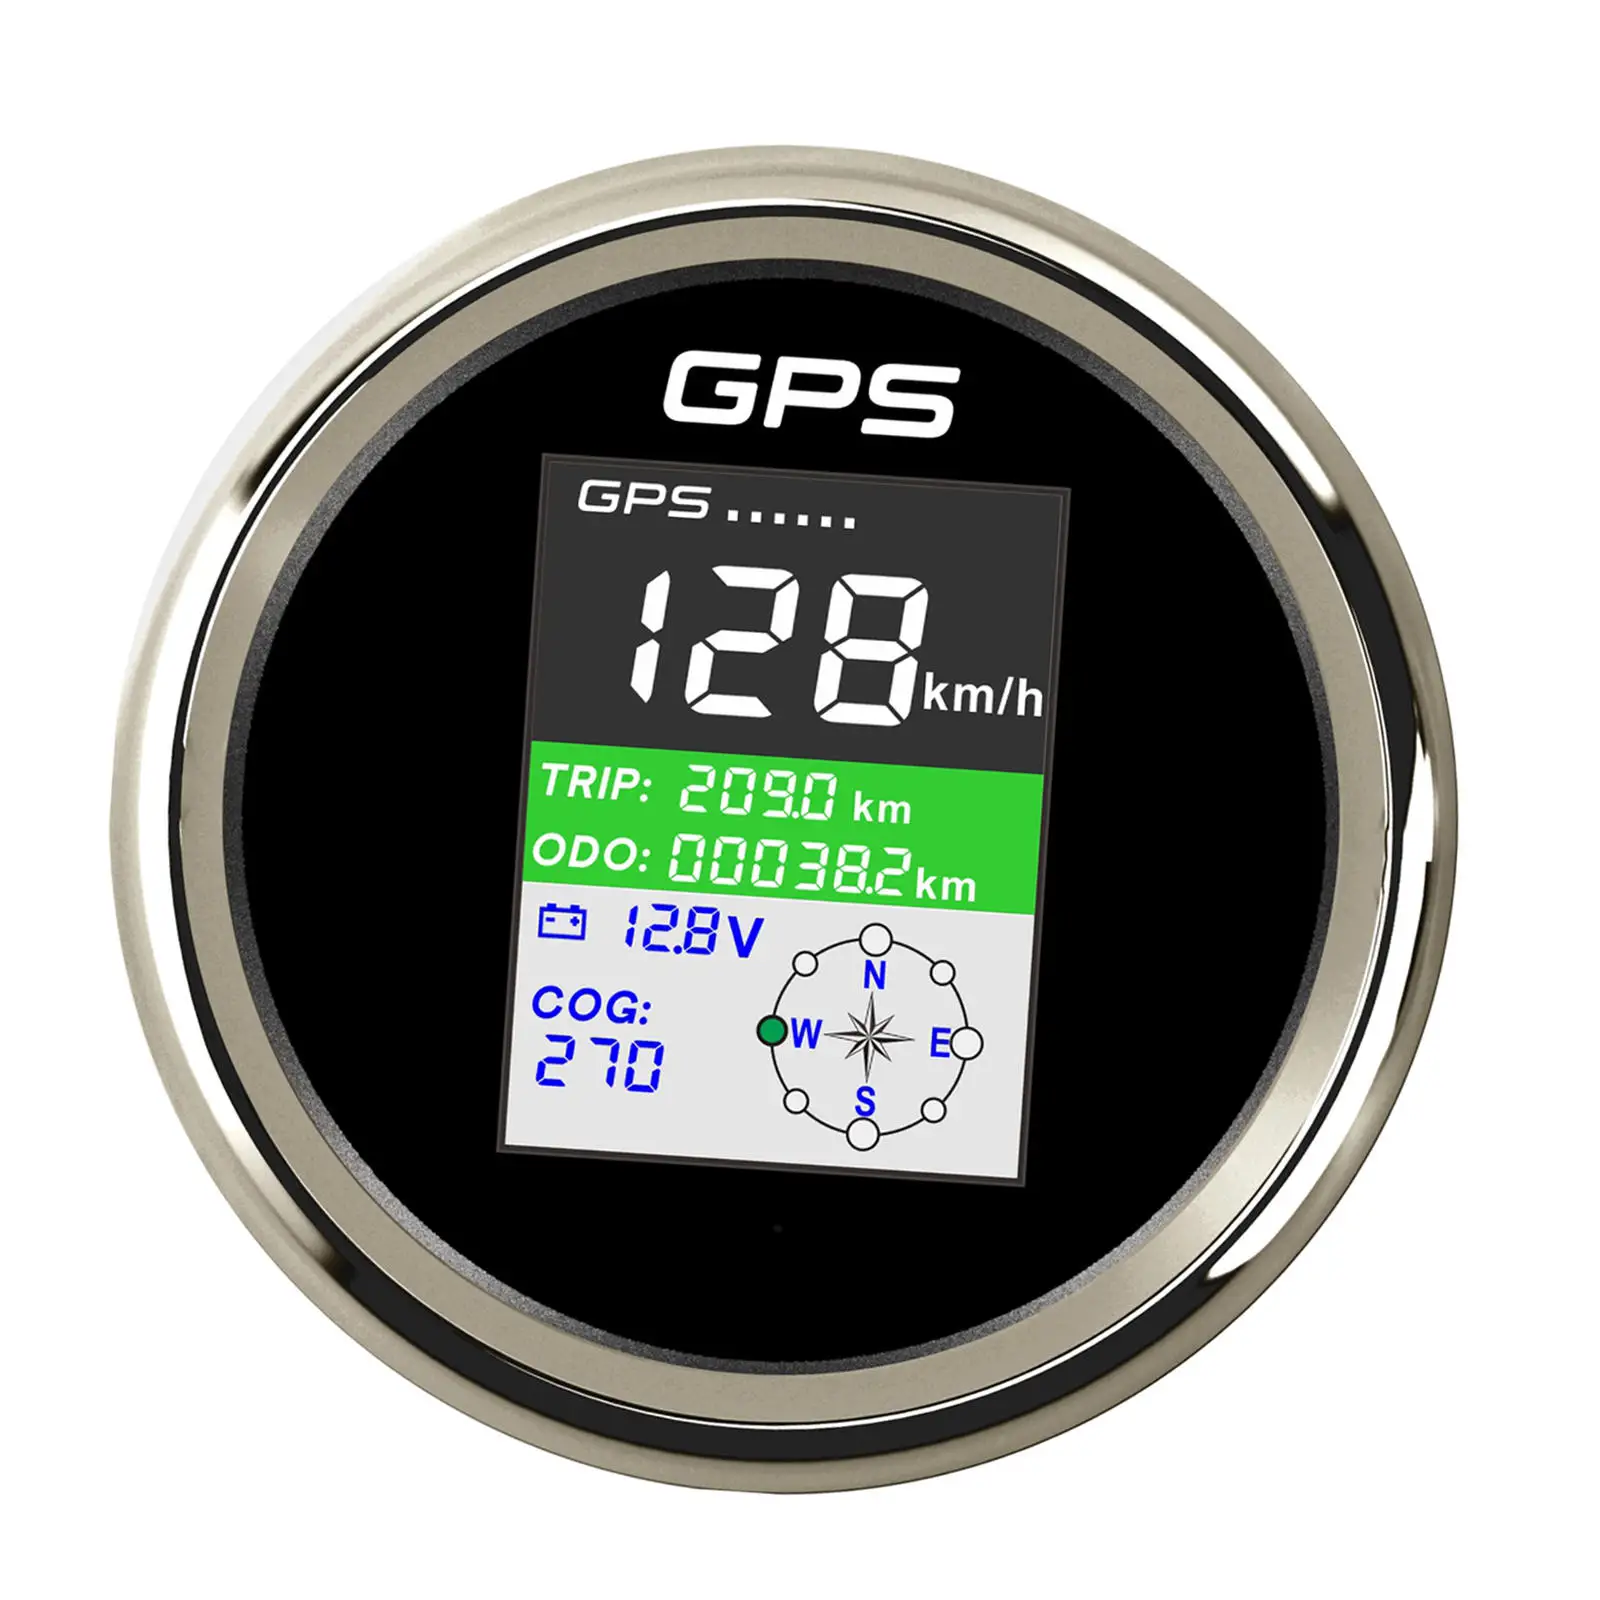 Stainless Steel GPS Speedometer Gauge LCD Display PLG3-BS-GPS 85mm for Boat